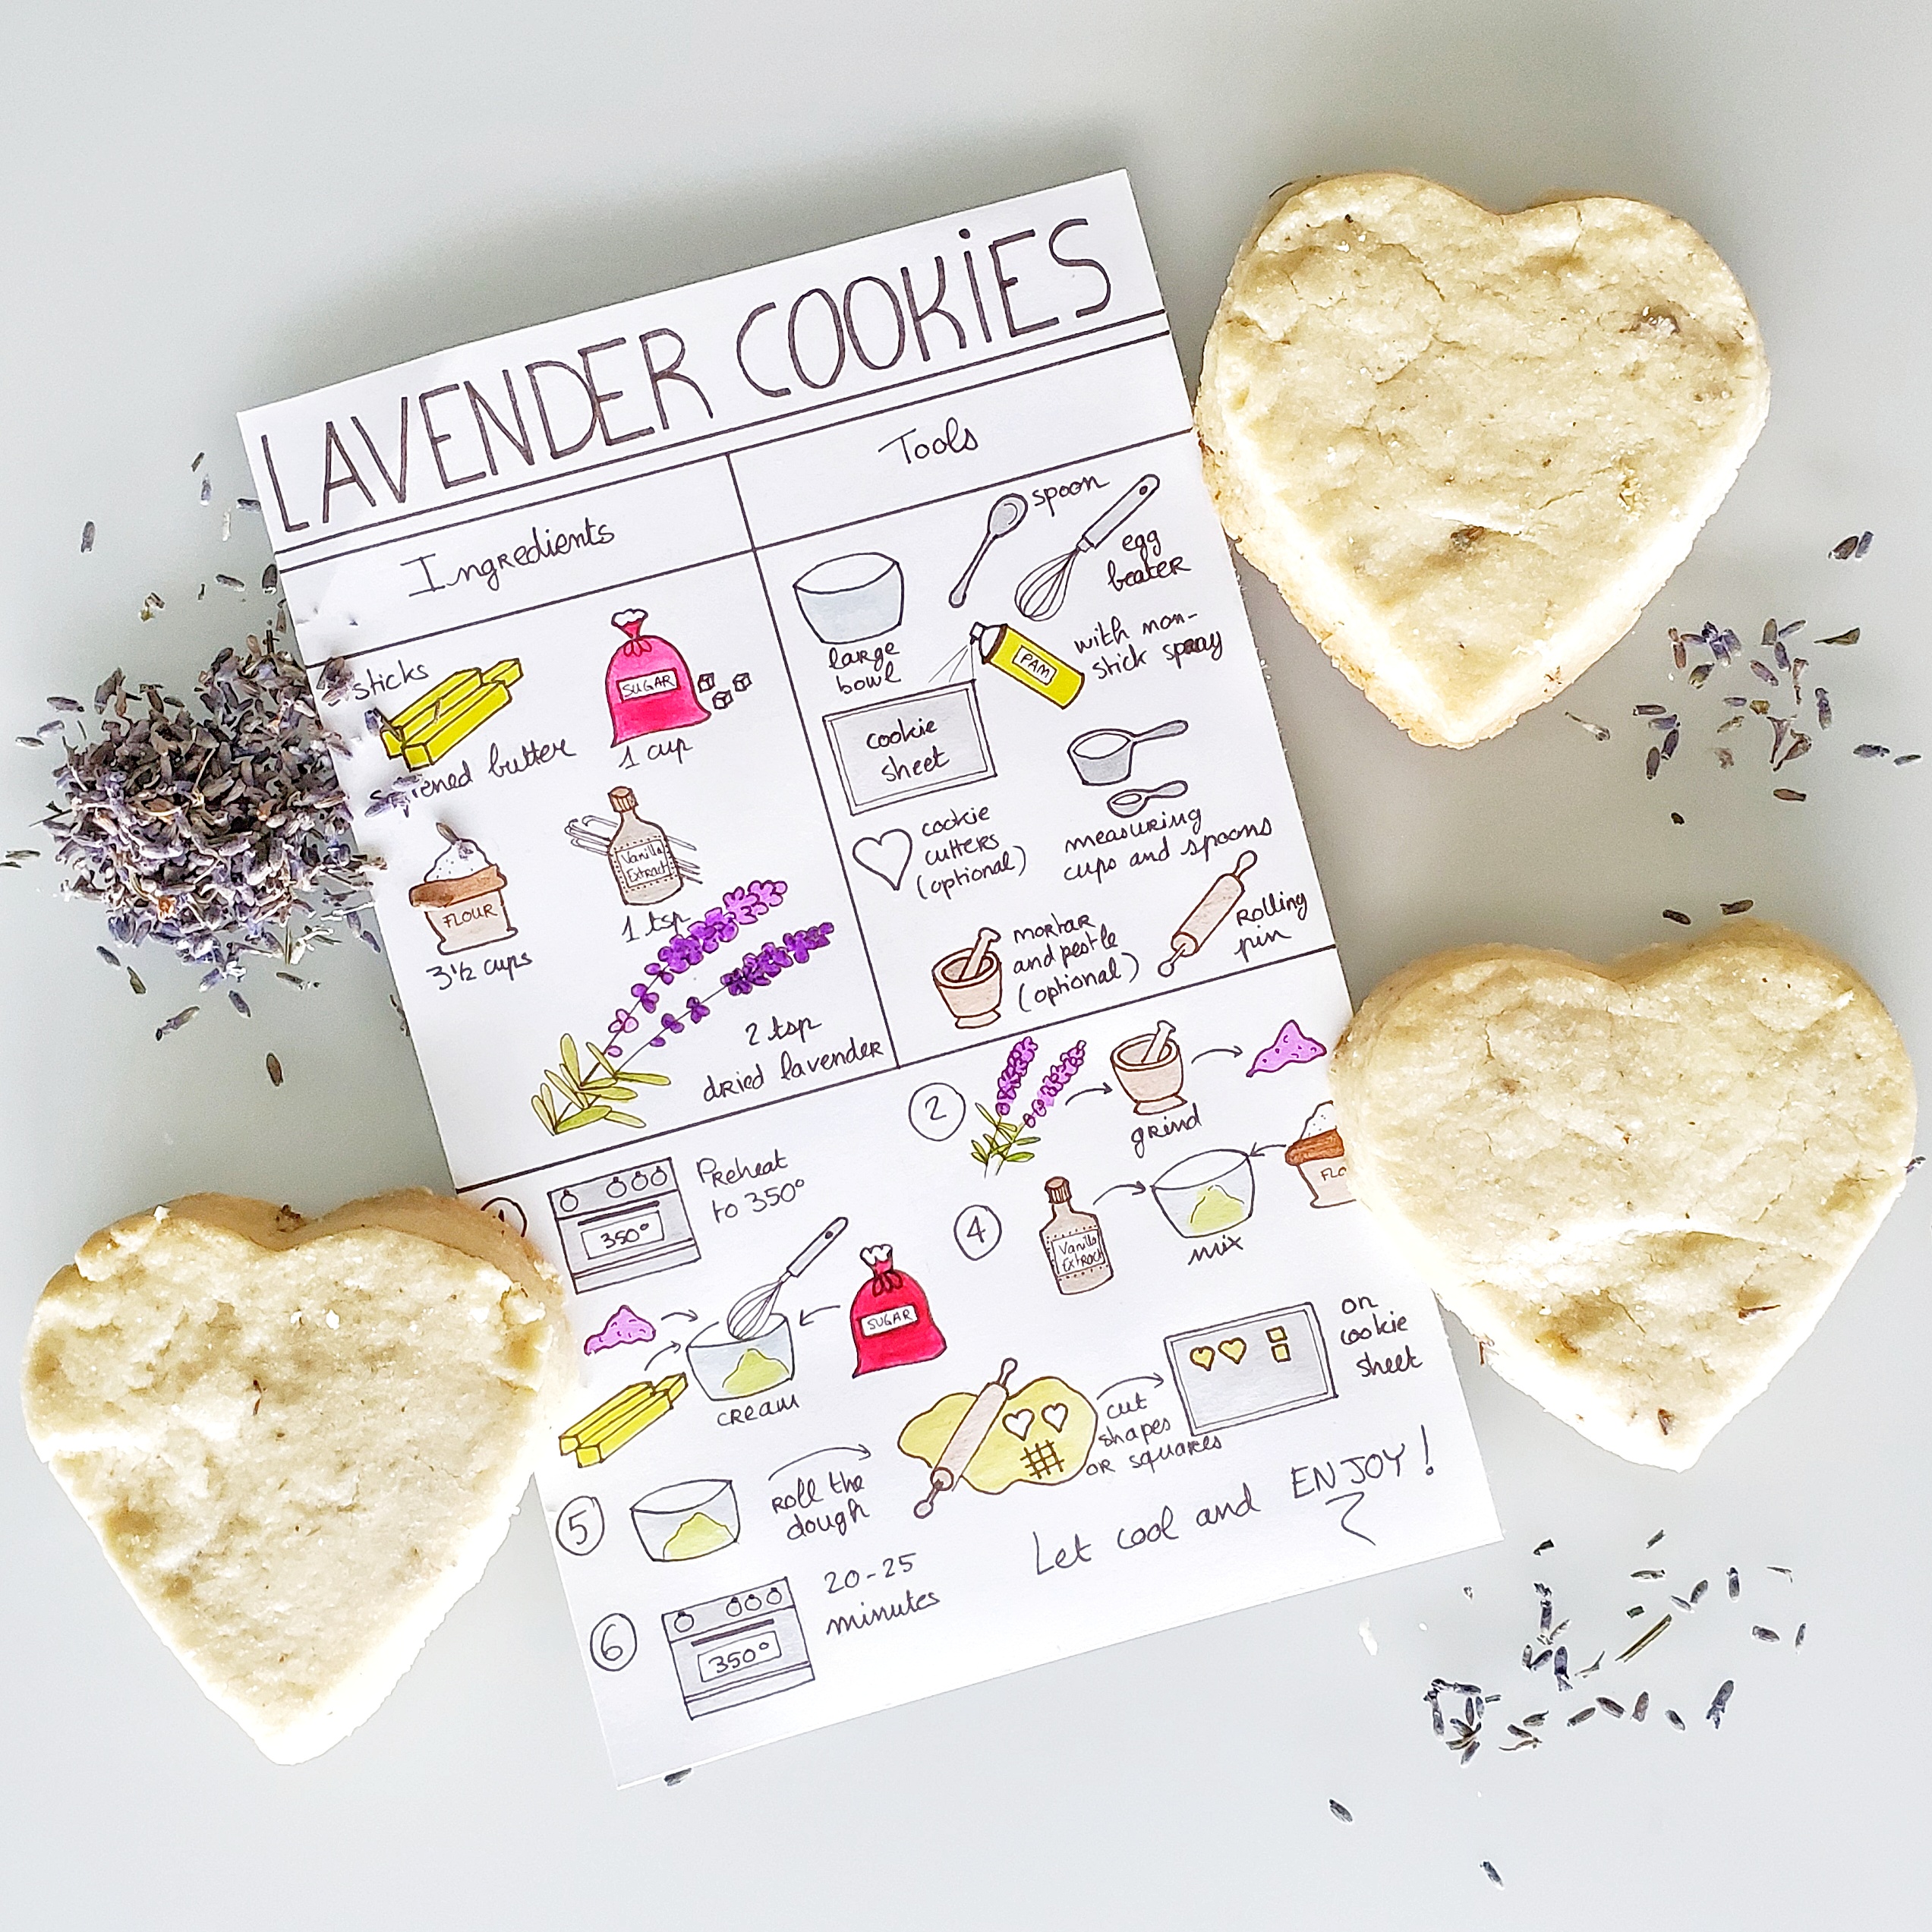 446-lavender-cookies.jpg